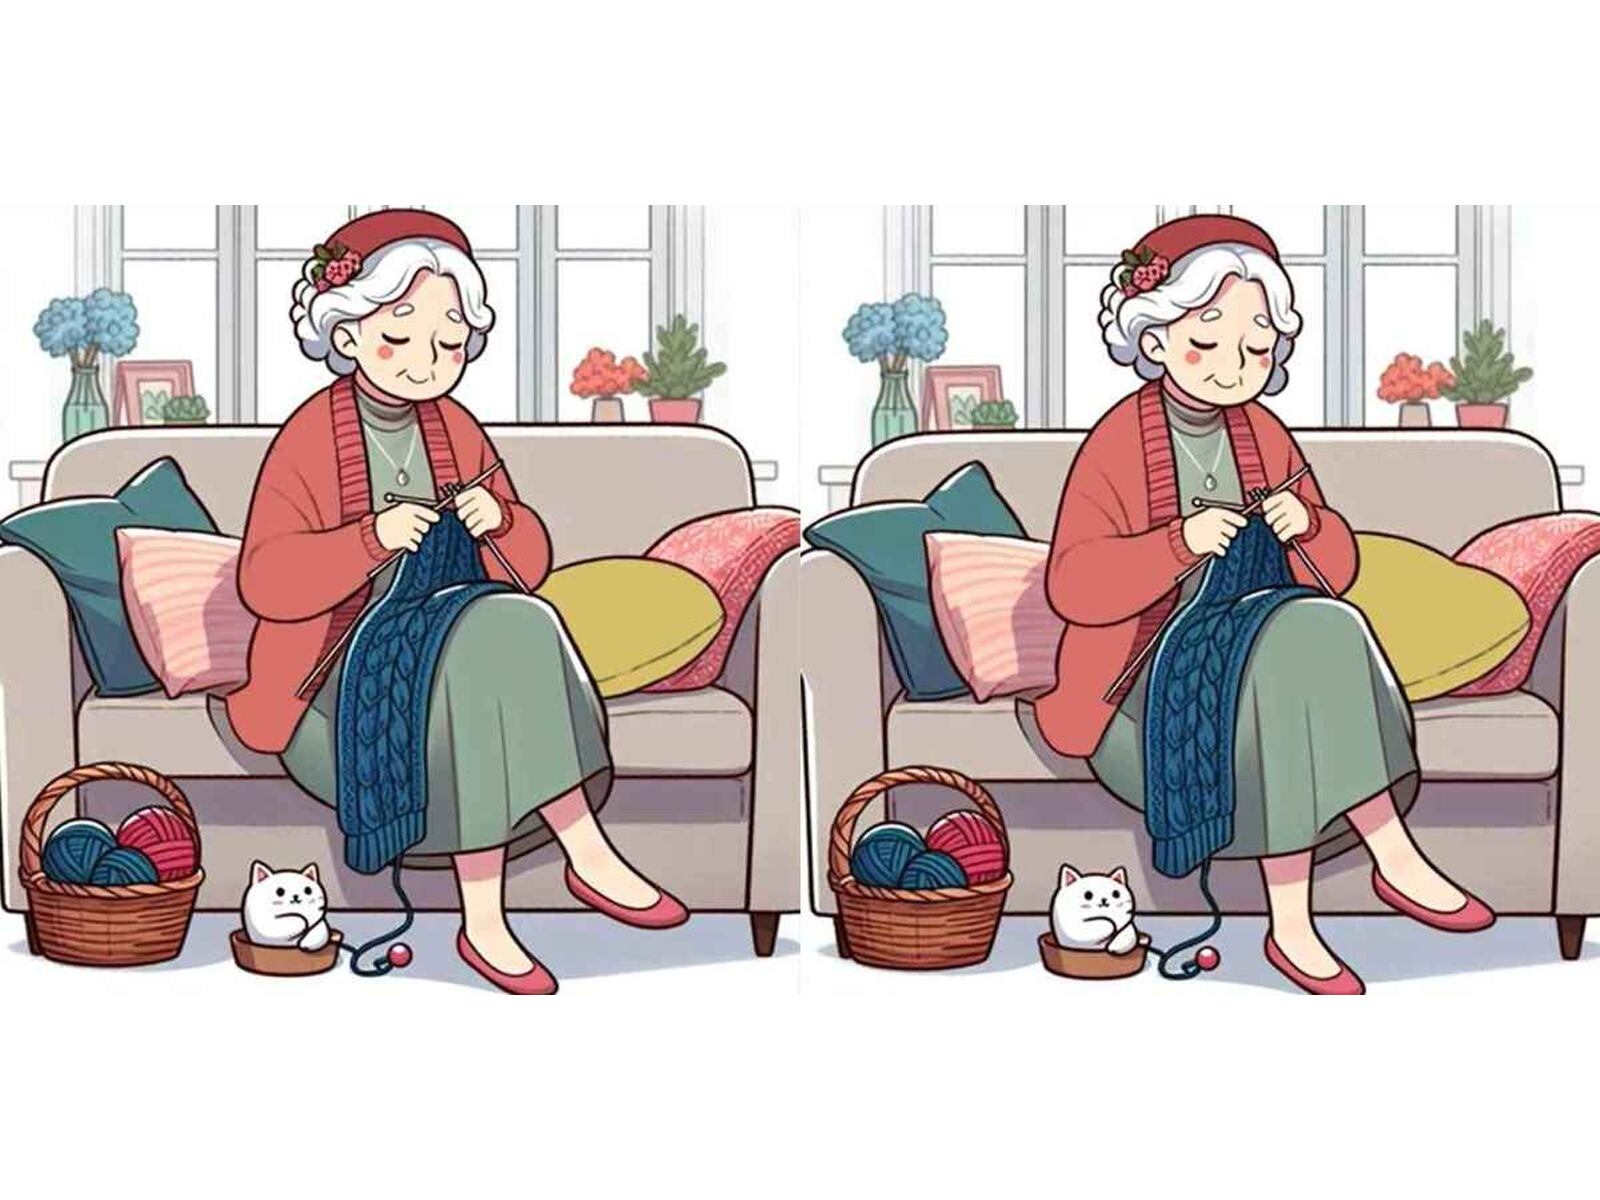 RETO VISUAL | Los lectores con los ojos más agudos pueden encontrar tres diferencias entre las imágenes de la abuela tejiendo suéteres en 15 segundos. ¿Puedes?